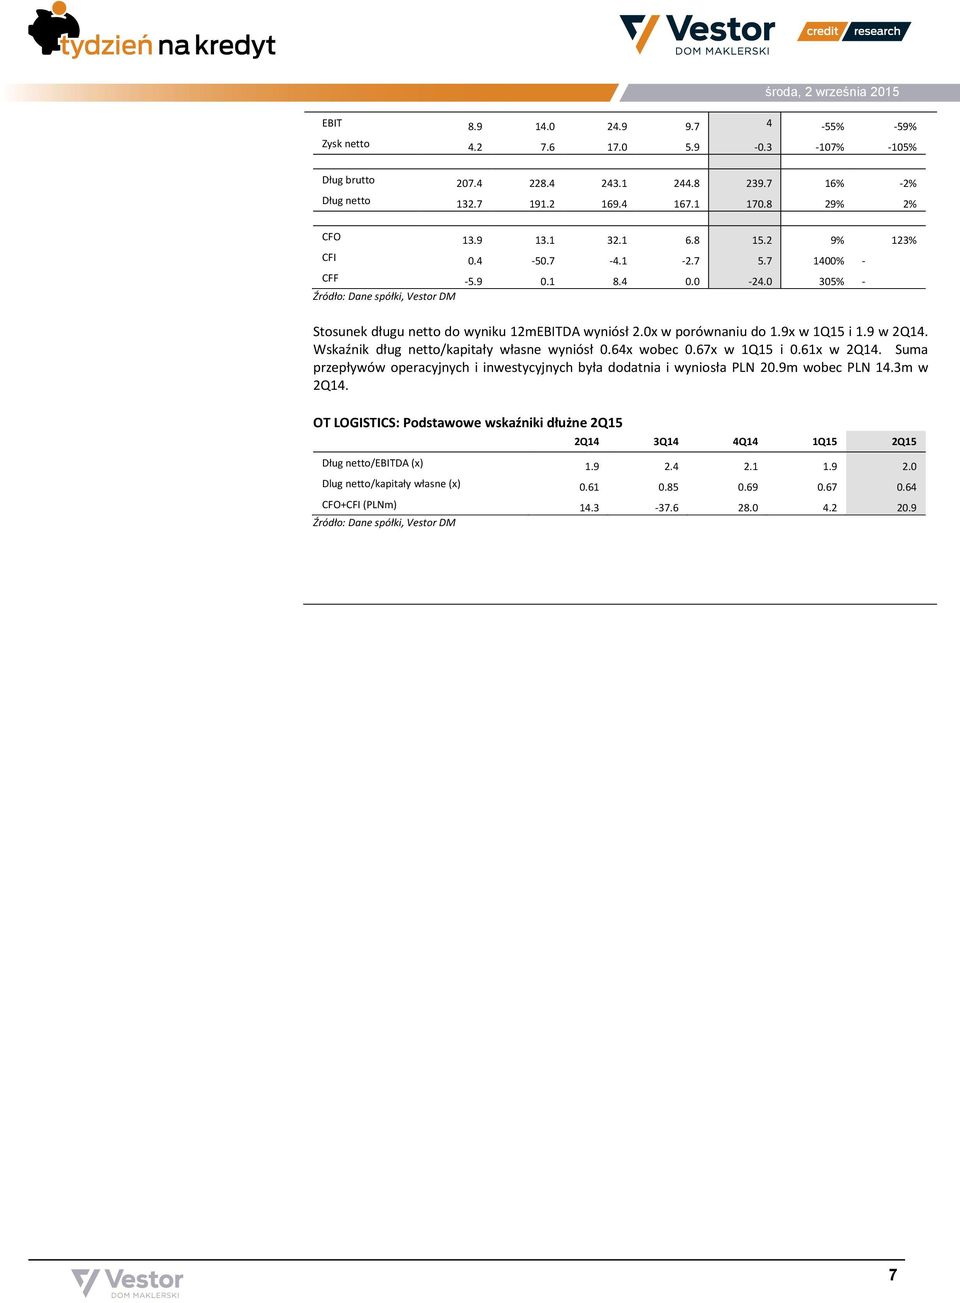 Wskaźnik dług netto/kapitały własne wyniósł 0.64x wobec 0.67x w 1Q15 i 0.61x w 2Q14. Suma przepływów operacyjnych i inwestycyjnych była dodatnia i wyniosła PLN 20.9m wobec PLN 14.3m w 2Q14.